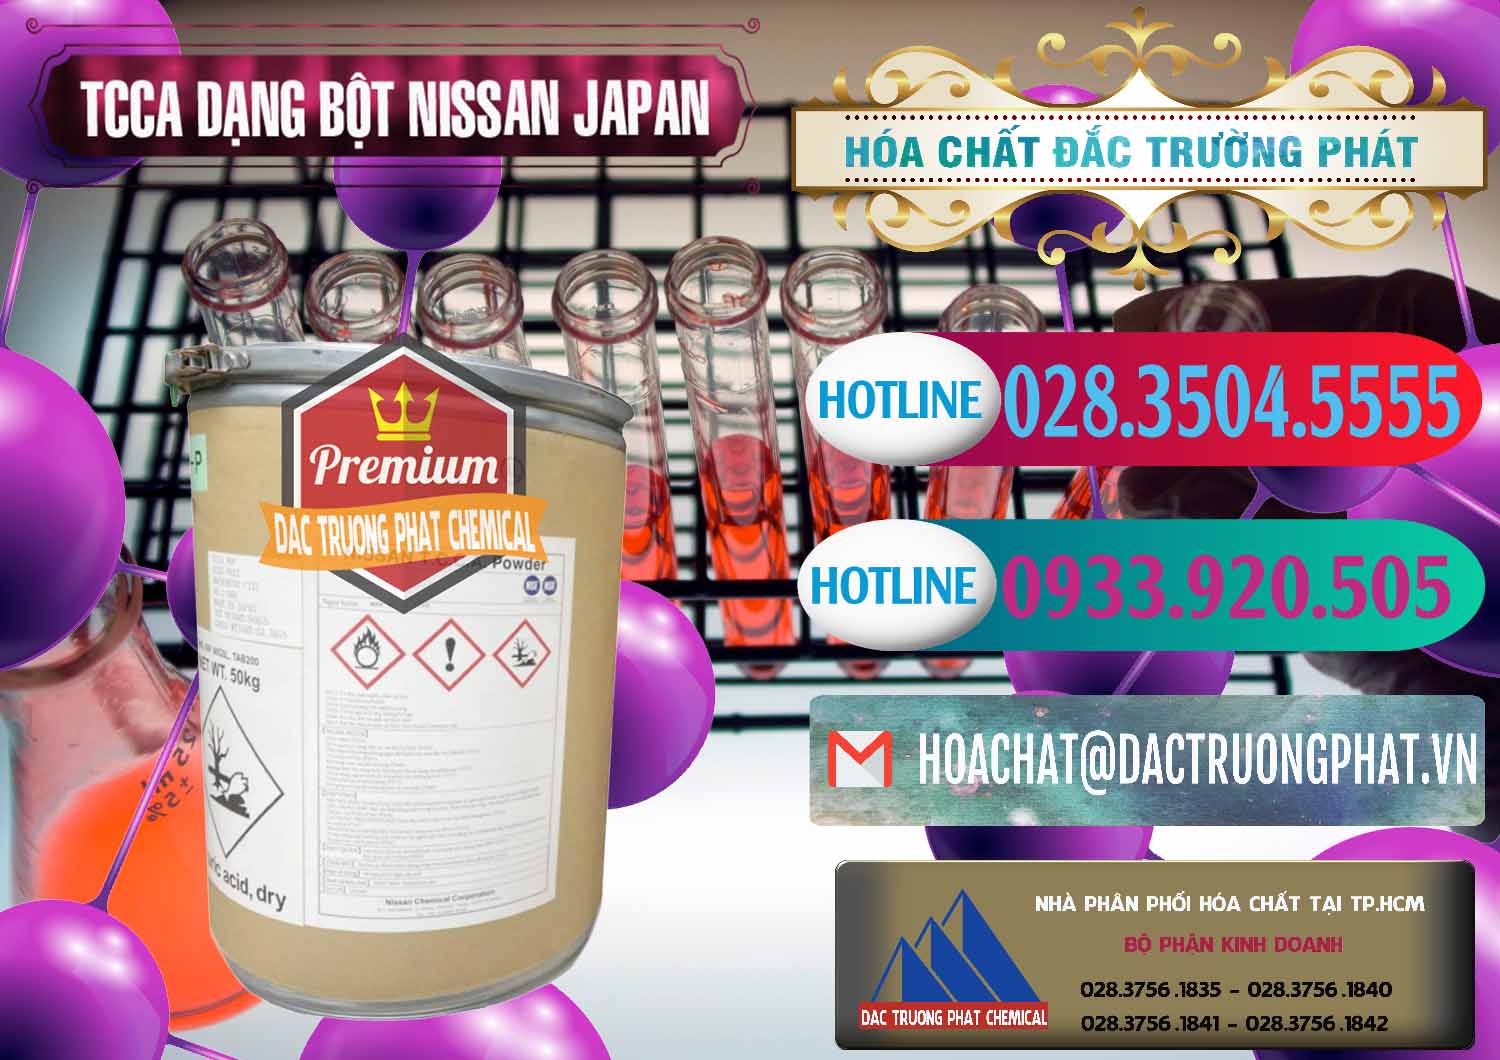 Cty bán ( cung cấp ) TCCA - Acid Trichloroisocyanuric 90% Dạng Bột Nissan Nhật Bản Japan - 0375 - Đơn vị cung cấp và phân phối hóa chất tại TP.HCM - truongphat.vn